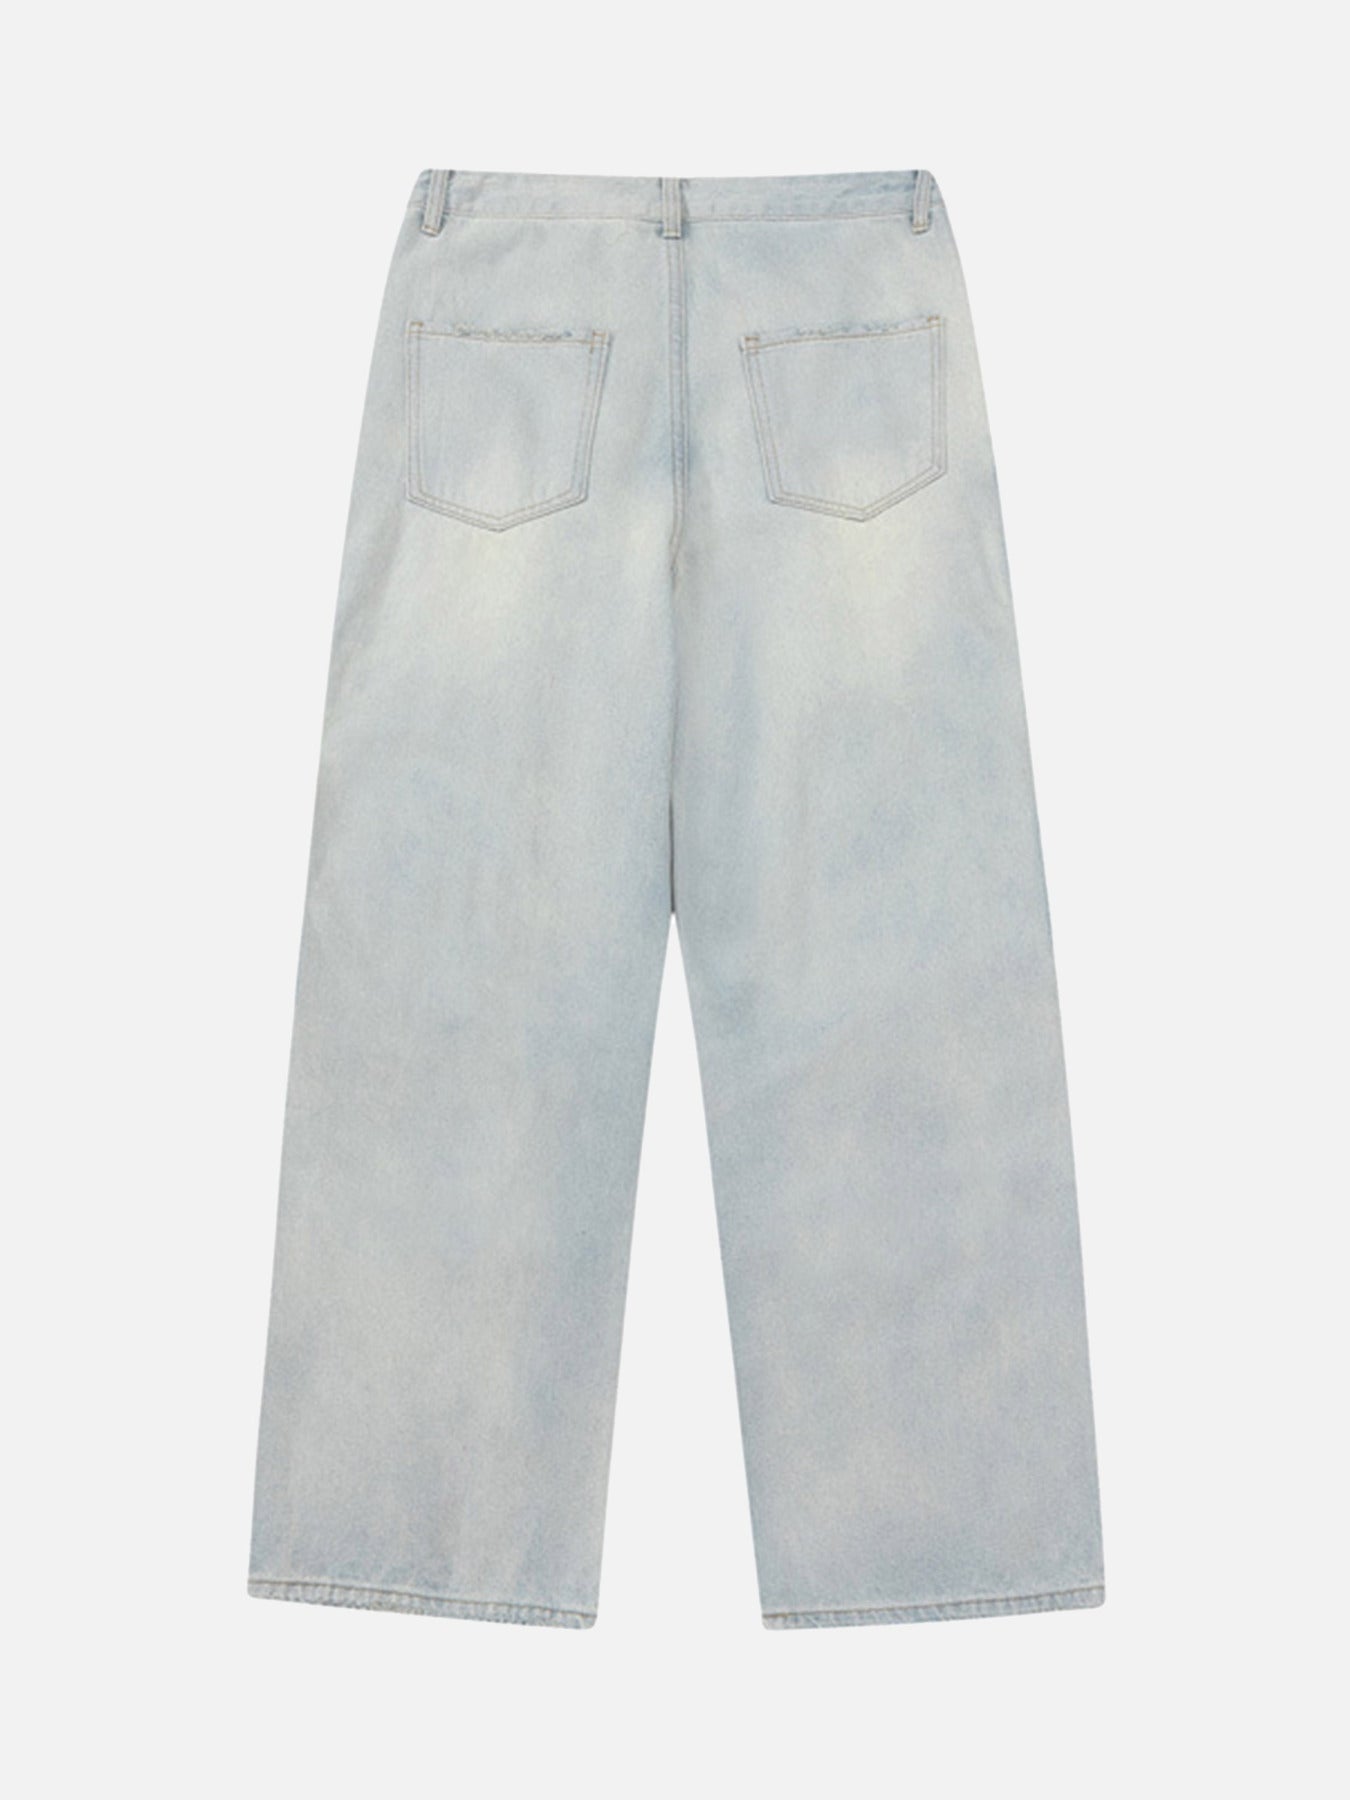 The Supermade Vintage Washed Multi-pocket Work Jeans